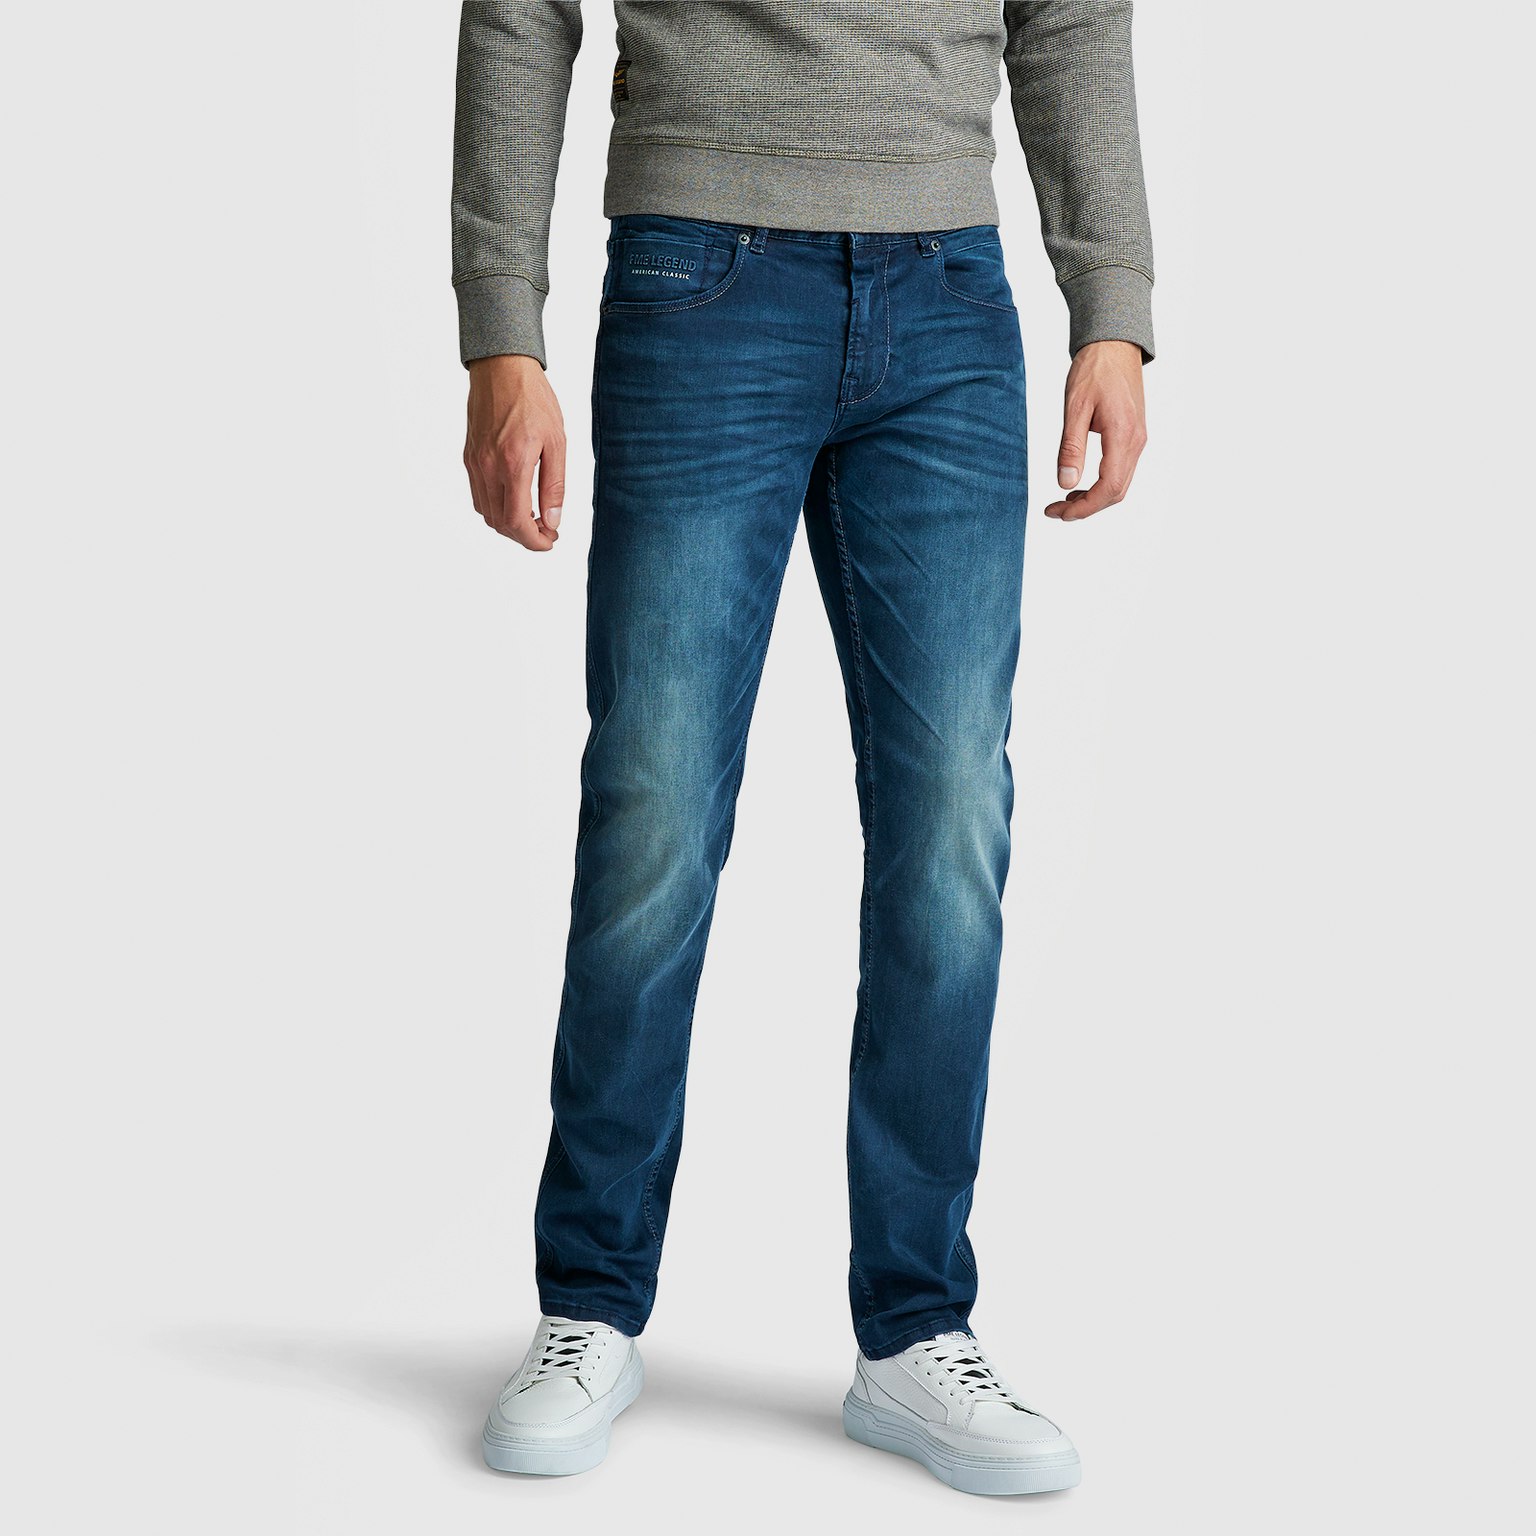 PME LEGEND Jeans Slim Fit NIGHTFLIGHT Magic Blue LMB